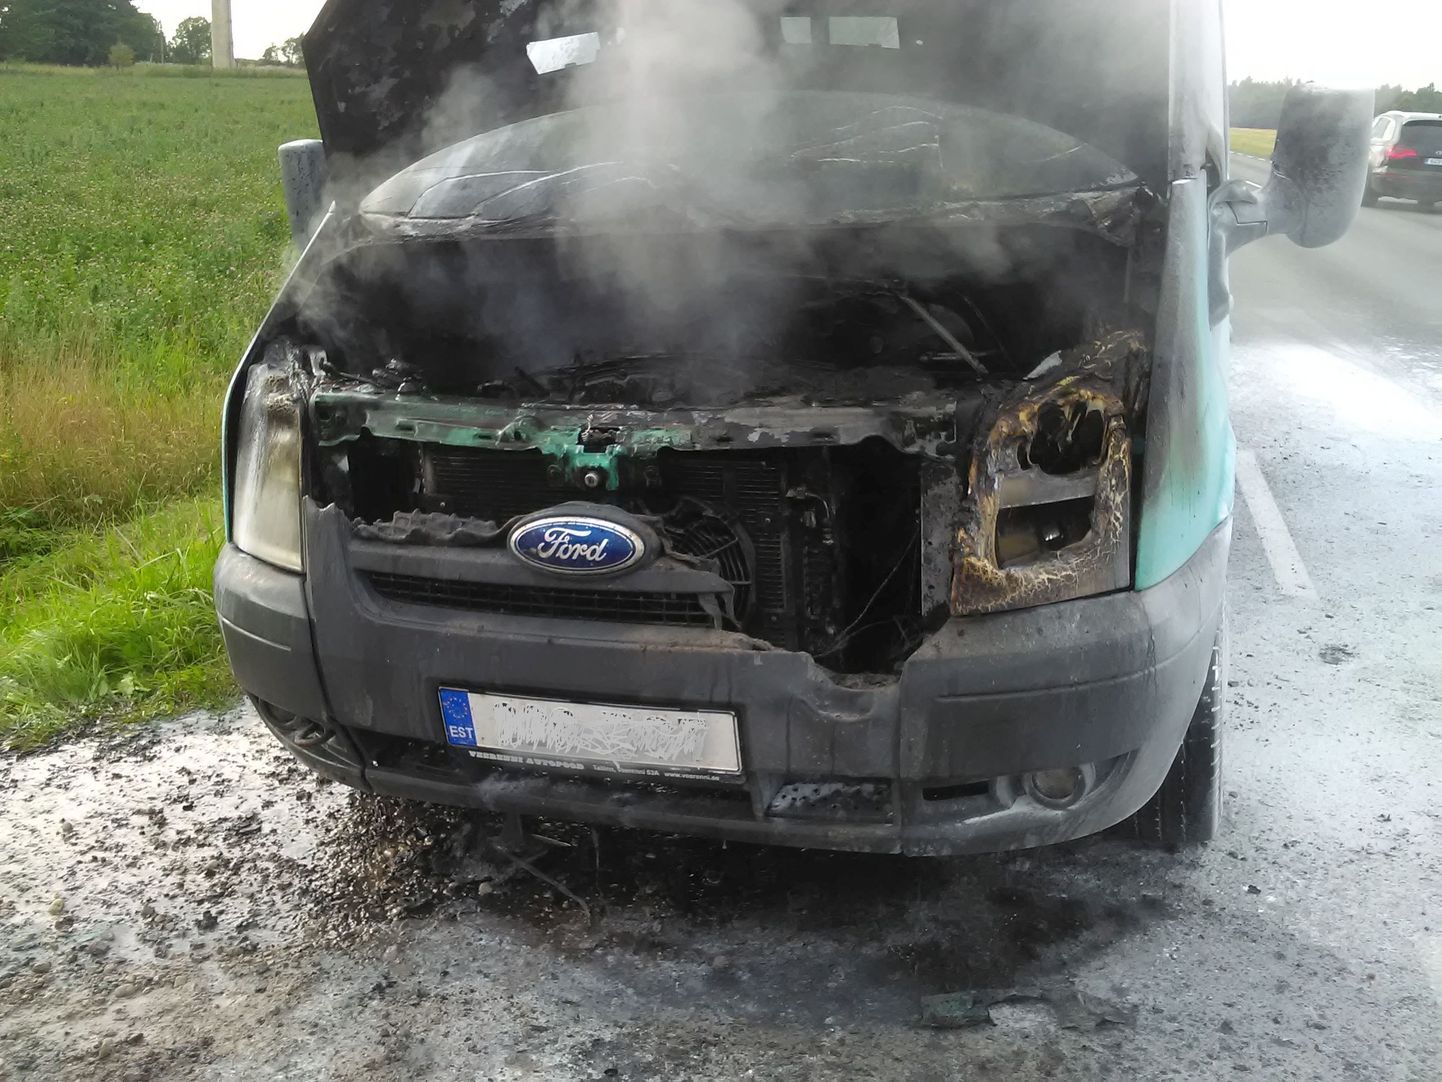 Auto põleng Viljandi linna piiri lähistel.